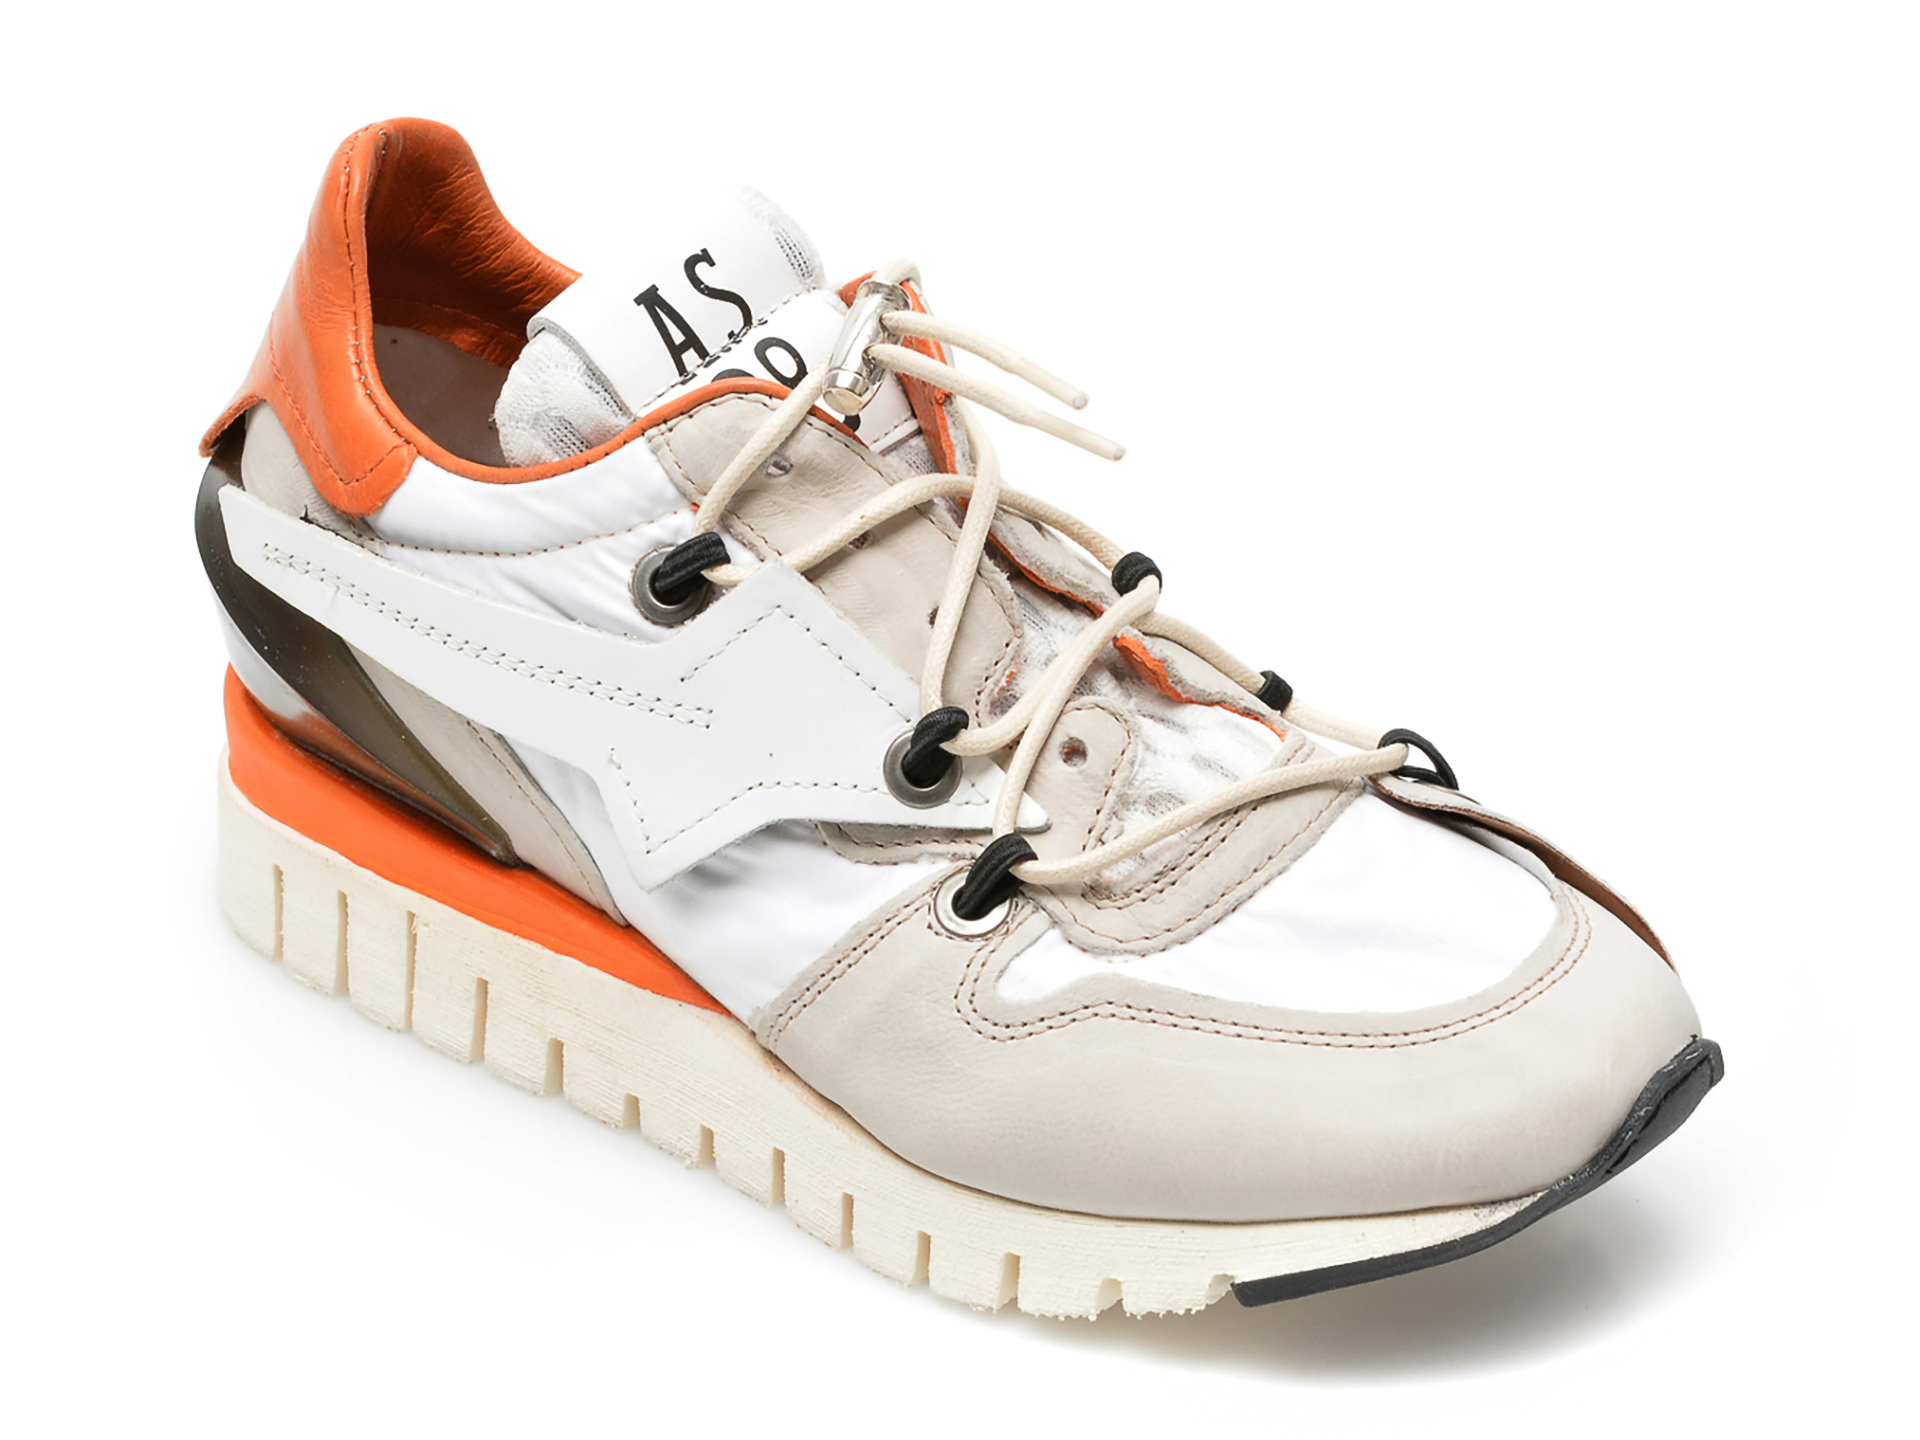 Pantofi sport A.S. 98 albi, A13101, din piele naturala 2022 ❤️ Pret Super tezyo.ro imagine noua 2022